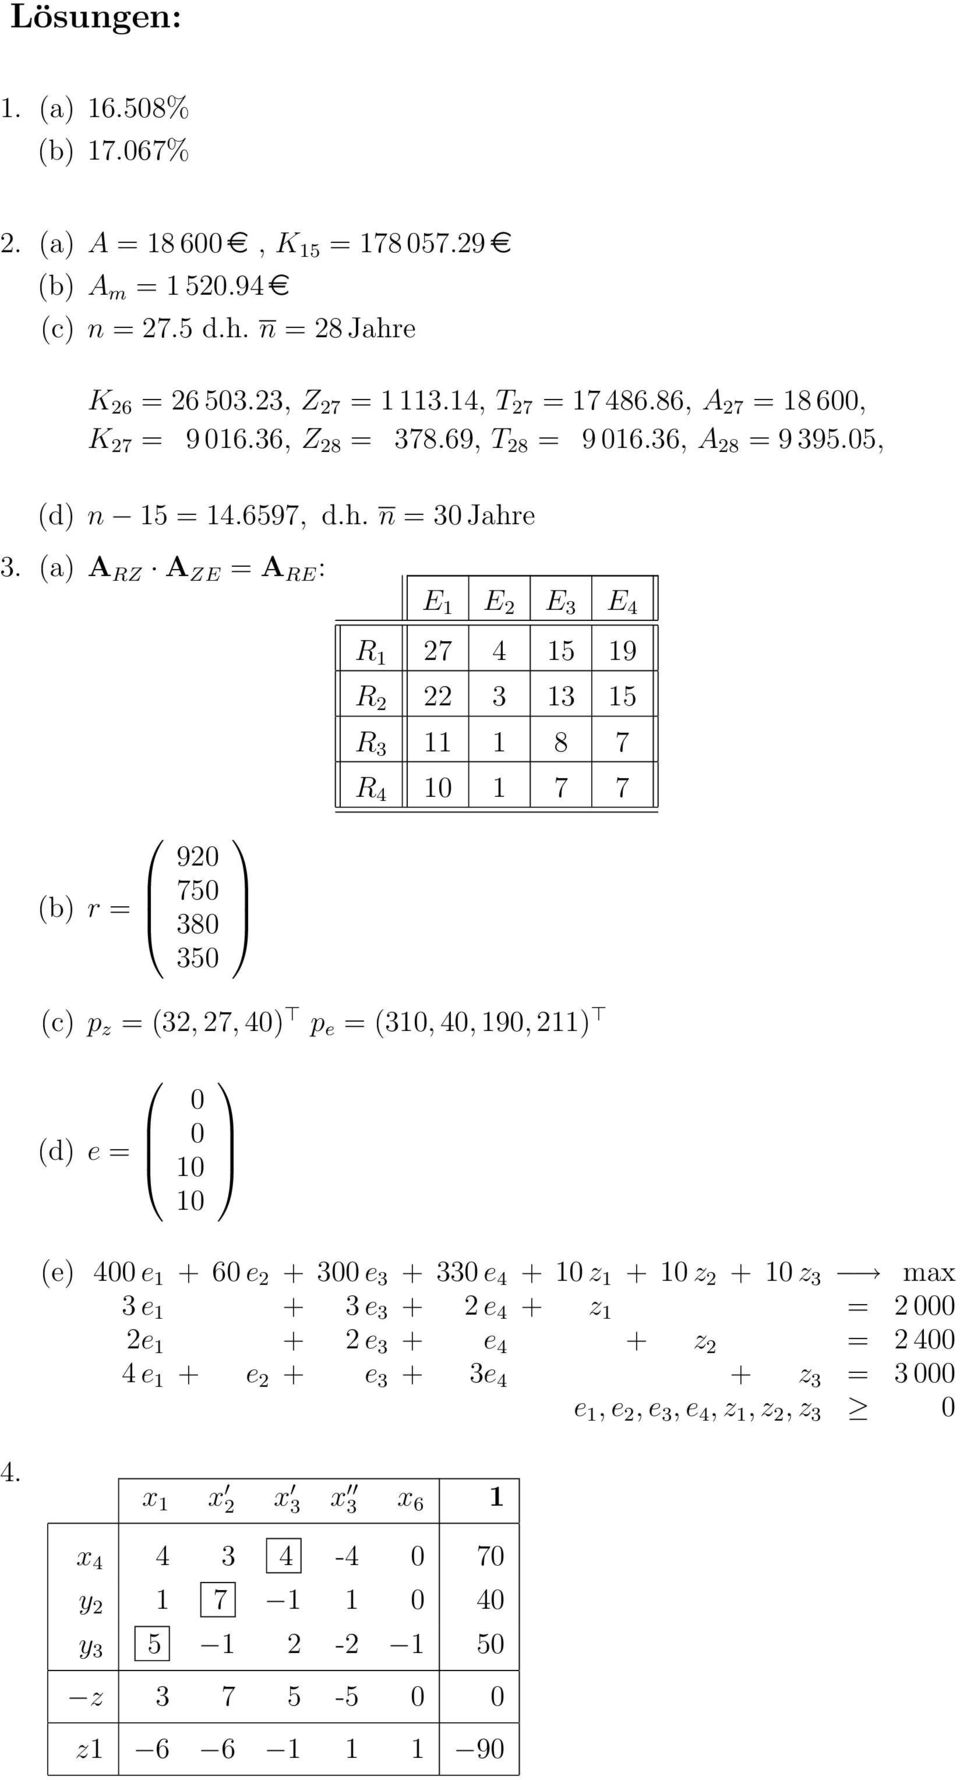 (a) A RZ A ZE = A RE : E 1 E 2 E 3 E 4 (b) r = 920 750 380 350 R 1 27 4 15 19 R 2 22 3 13 15 R 3 11 1 8 7 R 4 10 1 7 7 (c) p z = (32, 27, 40) p e = (310, 40, 190, 211) (d) e = 0 0 10 10 (e) 400 e 1 +